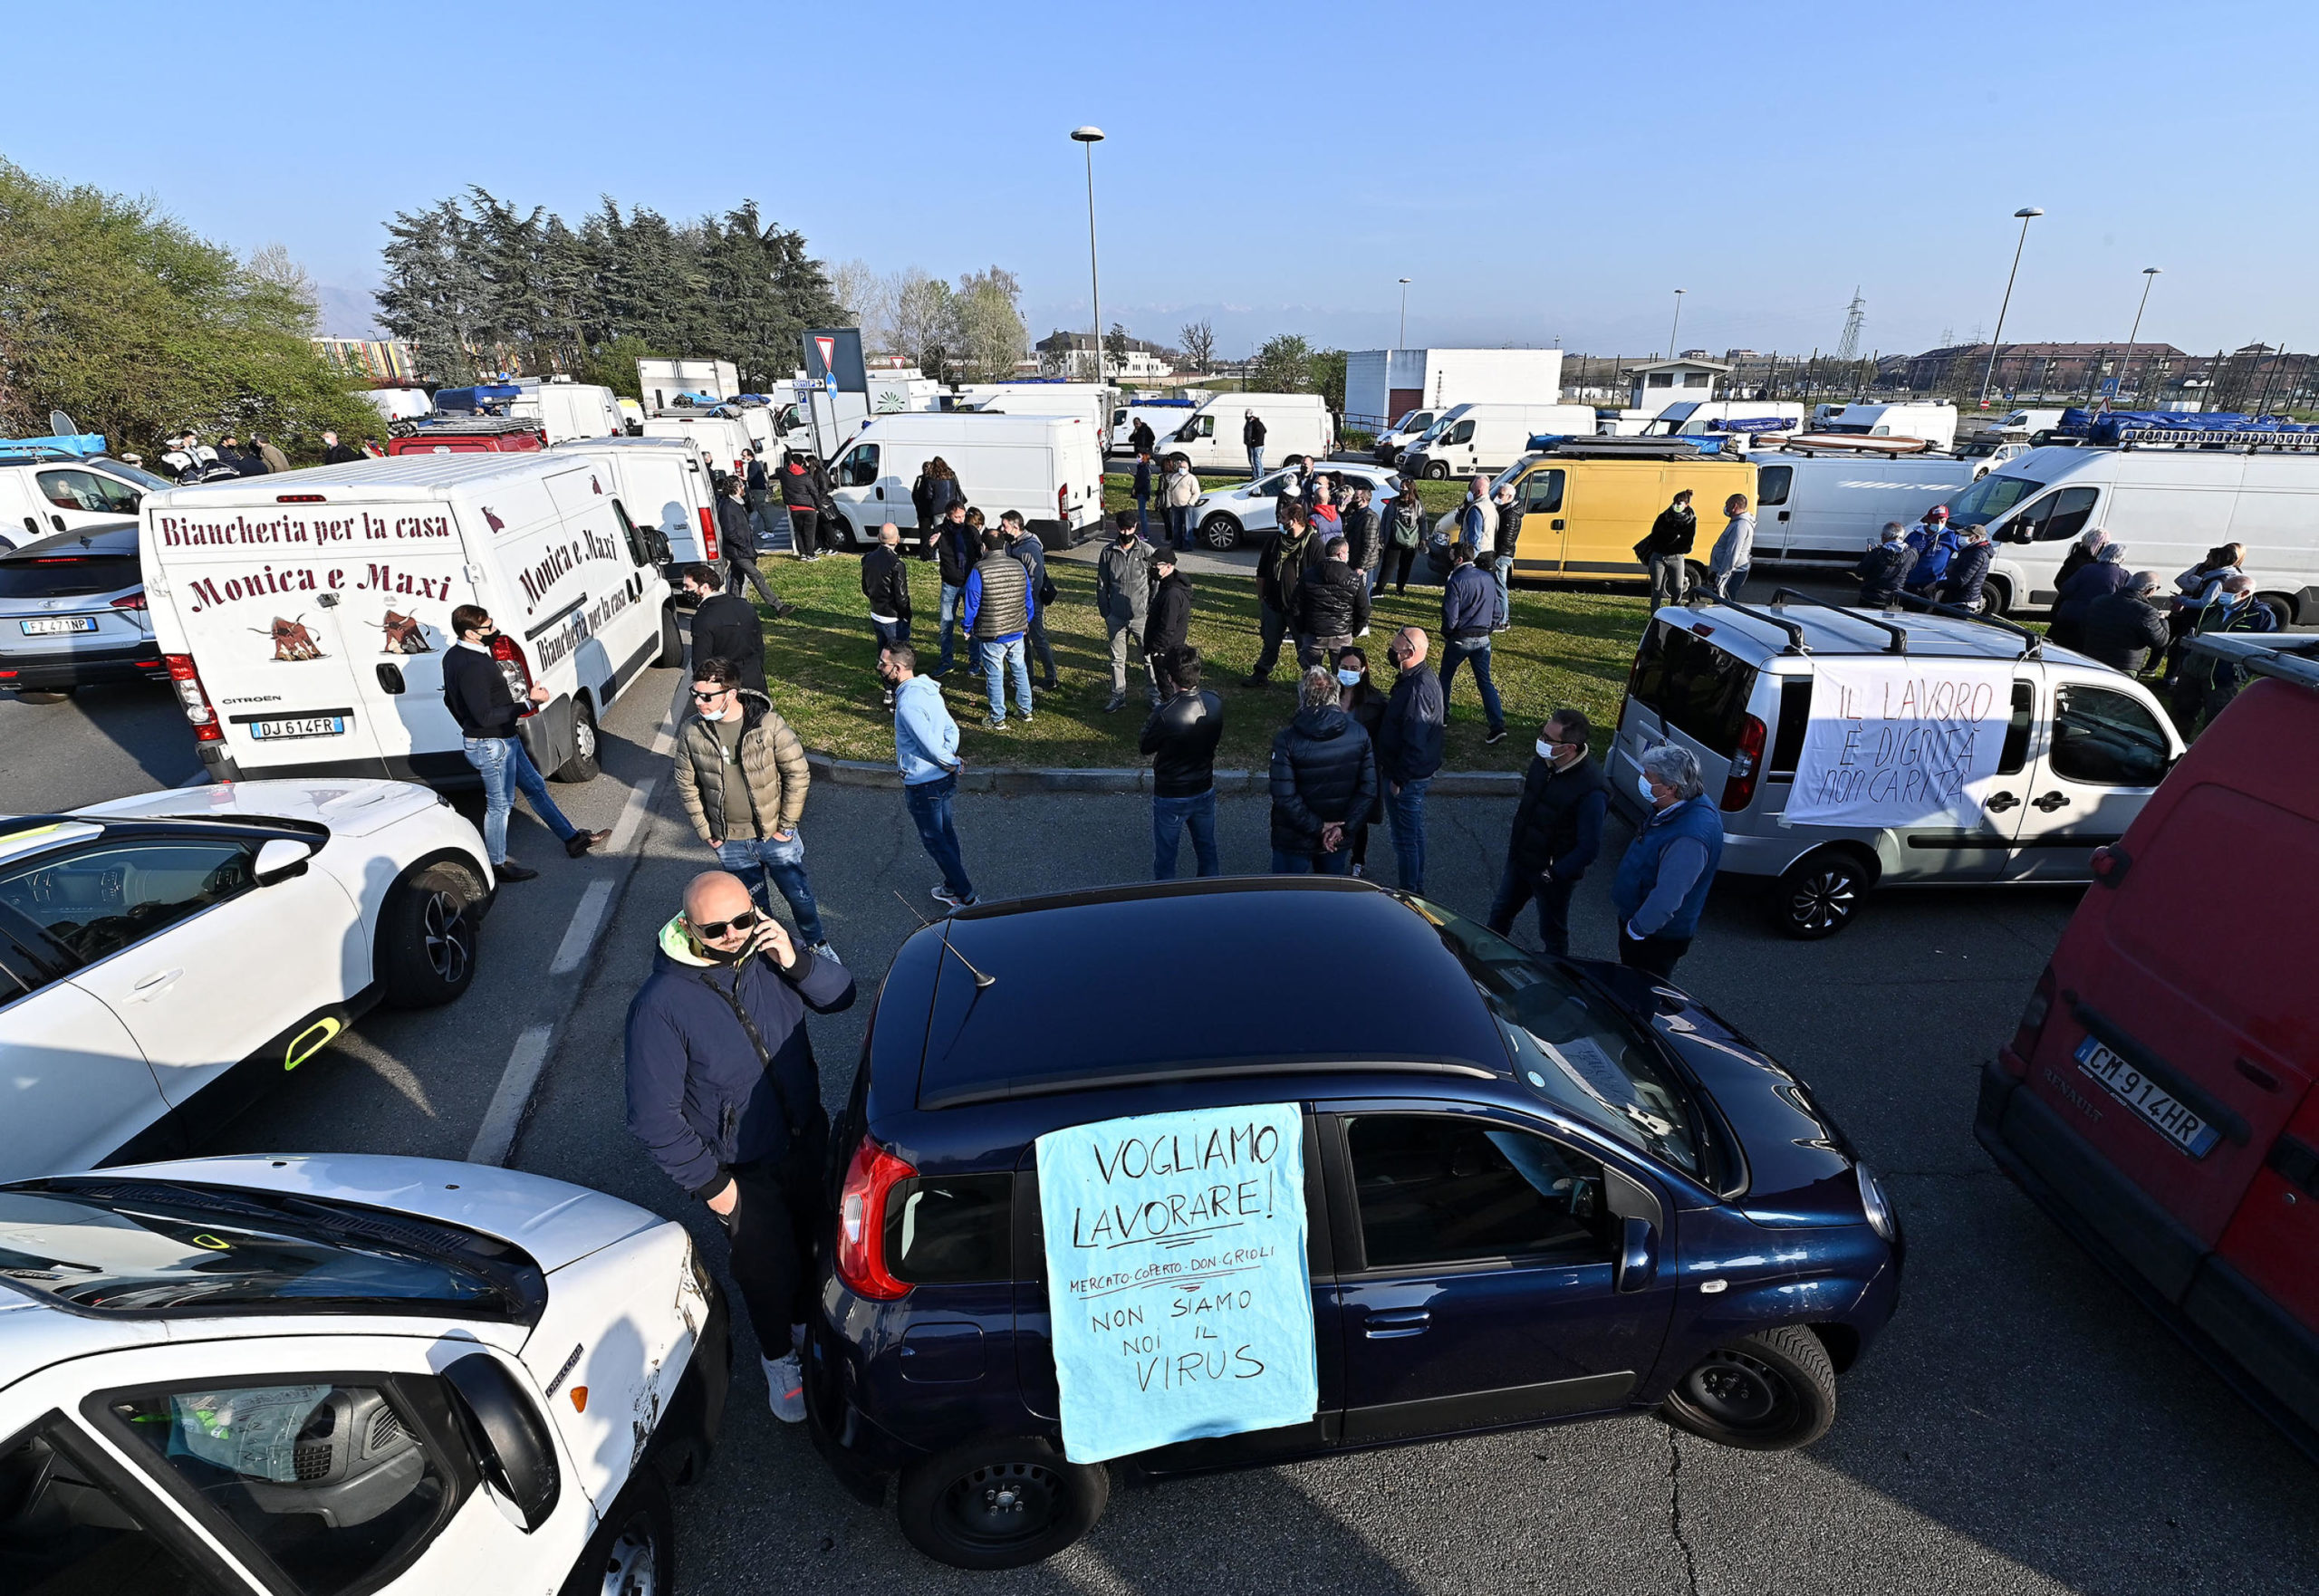 Striscioni di protesta su furgoni e macchine degli ambulanti